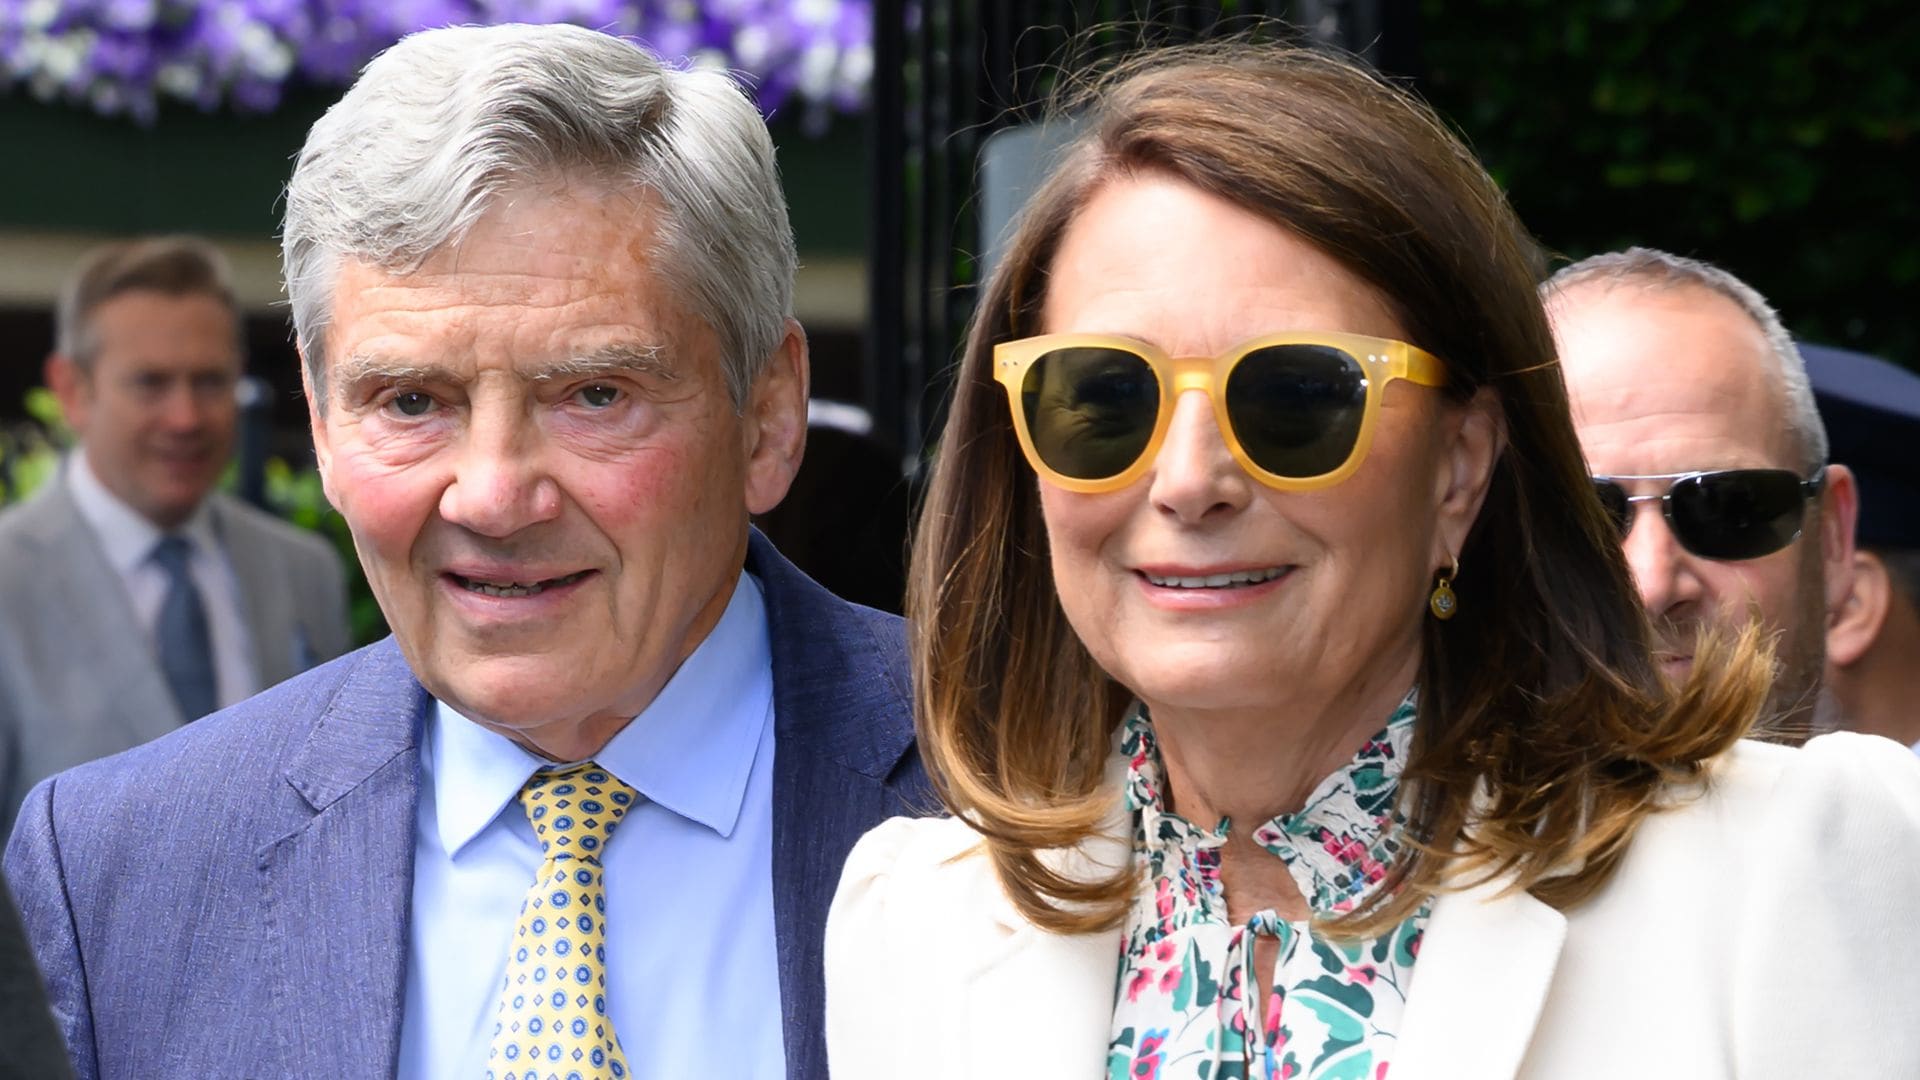 The Princess of Wales' parents make Royal Box appearance at Wimbledon